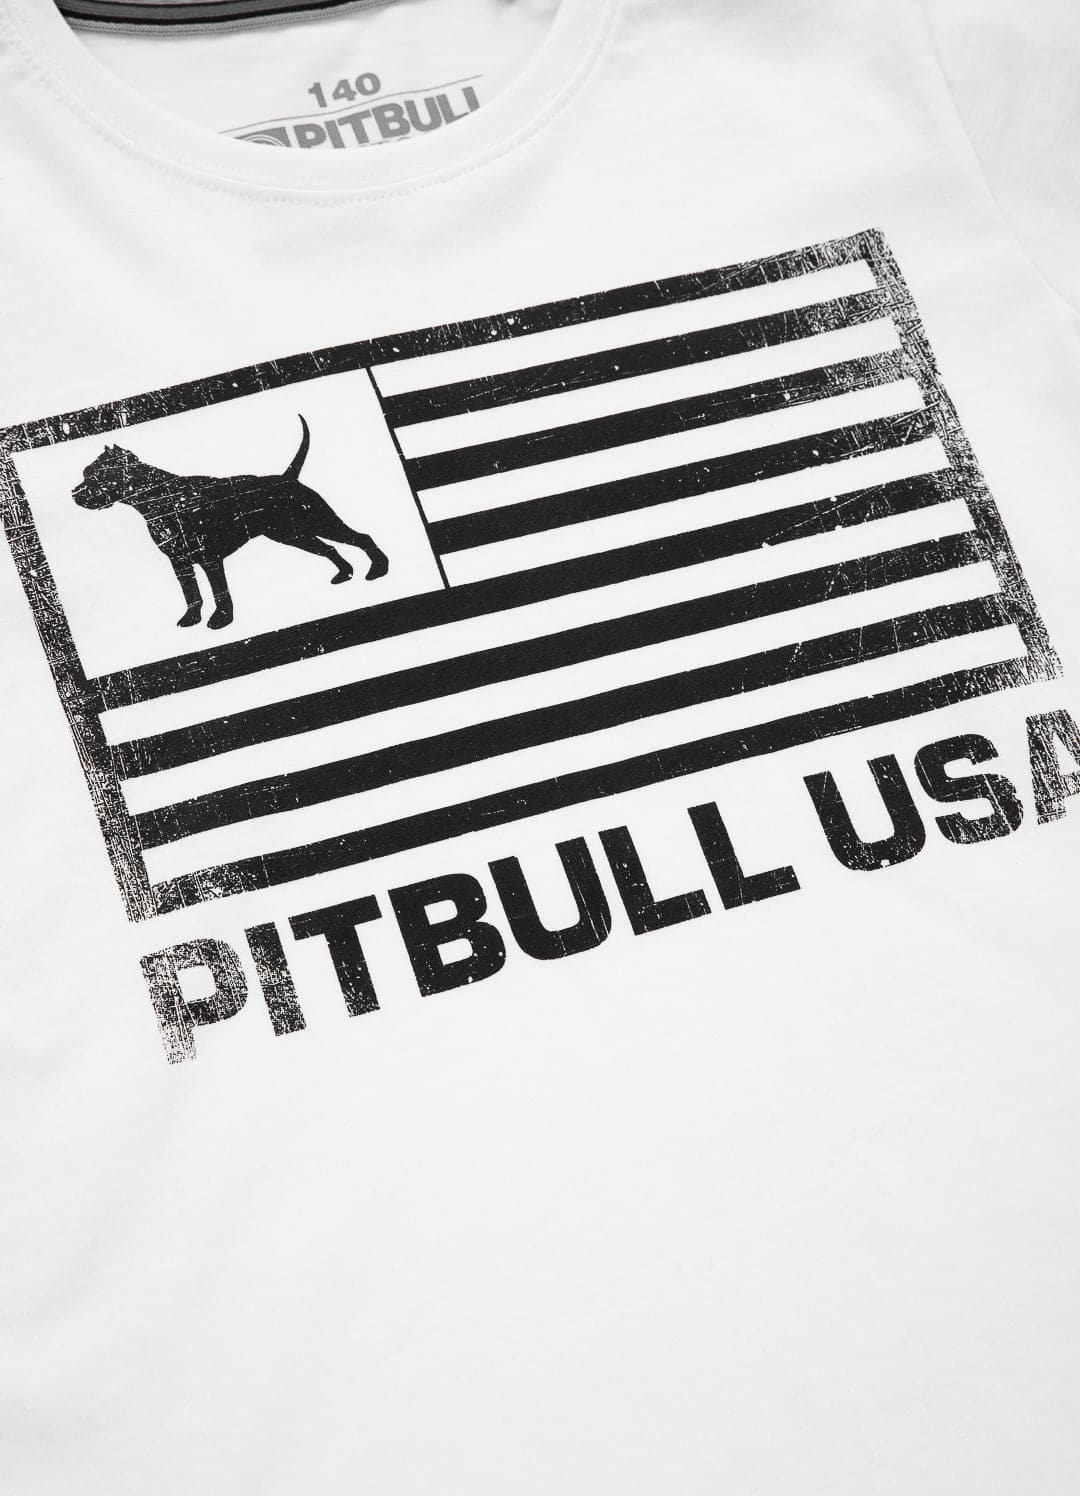 PITBULL USA kids white t-shirt.